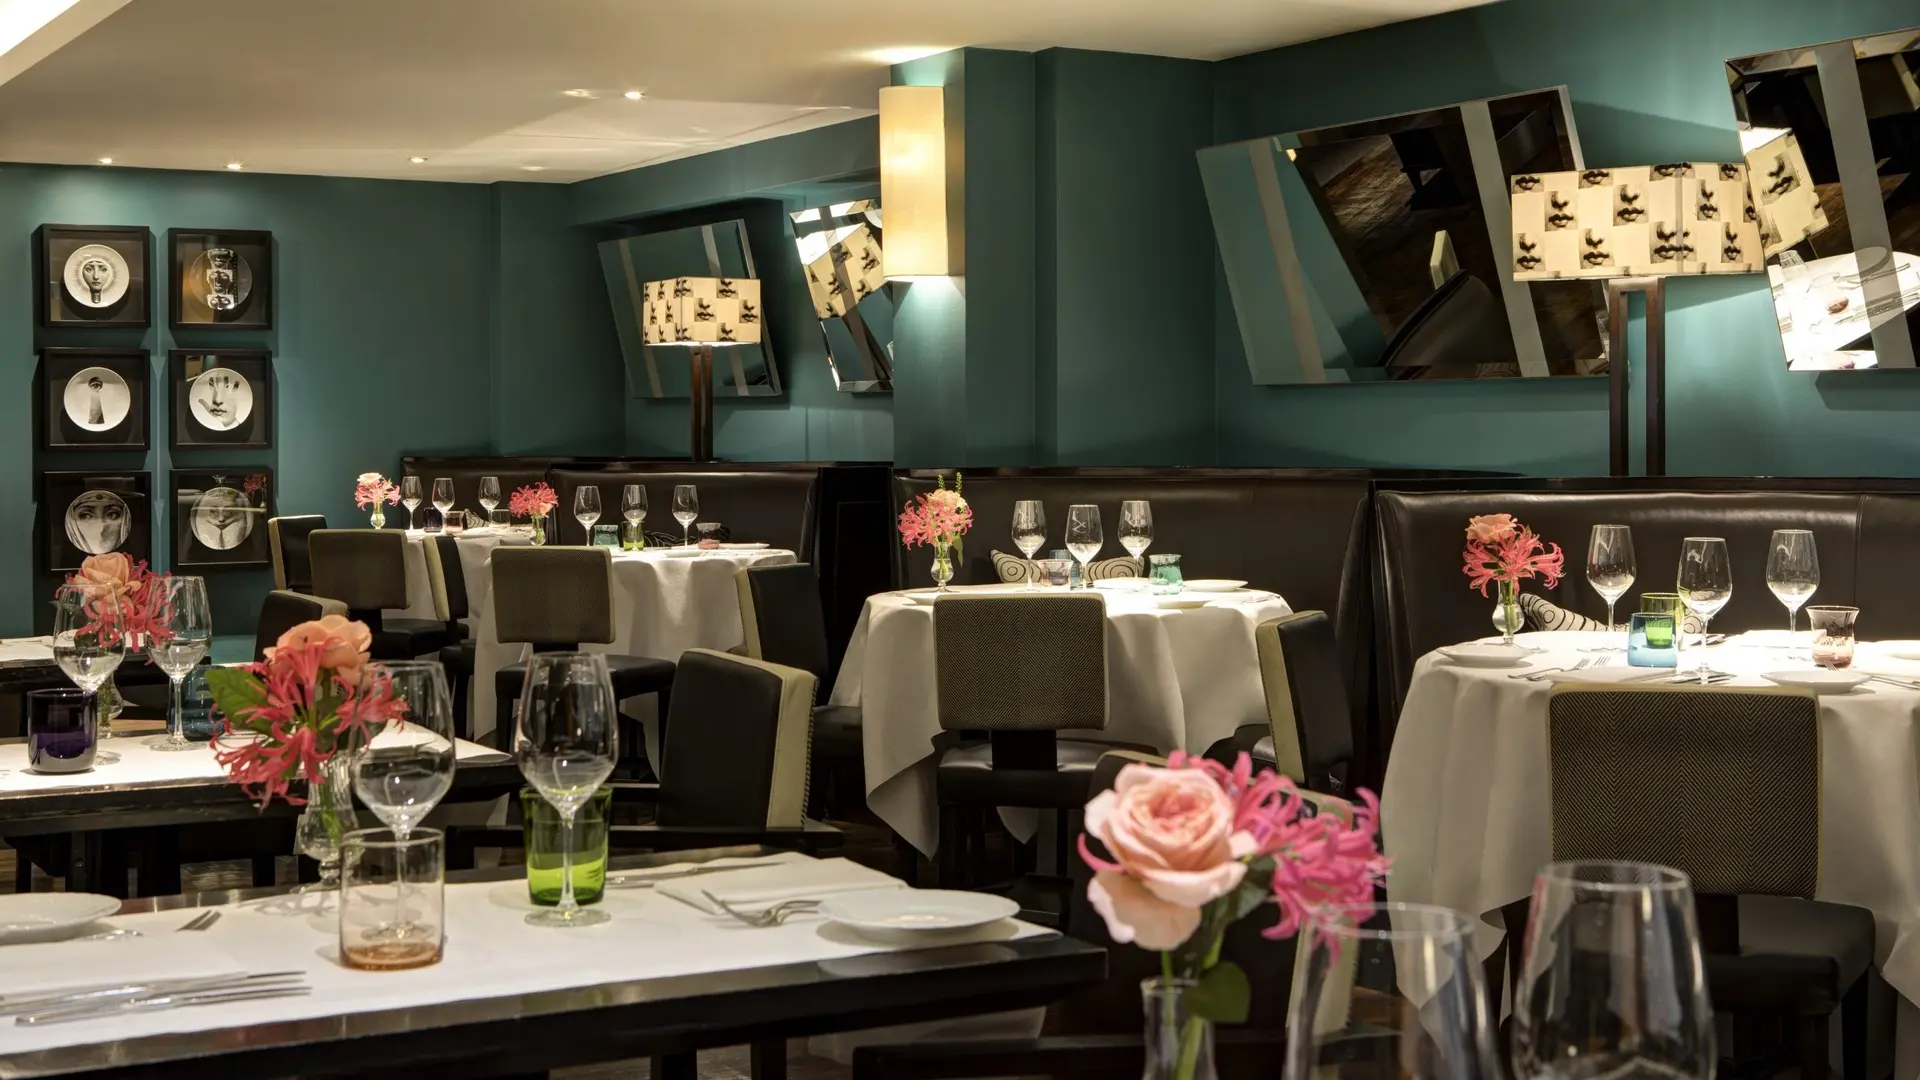 Hotel review Restaurants & Bars' - Rocco Forte Hotel Amigo - 0